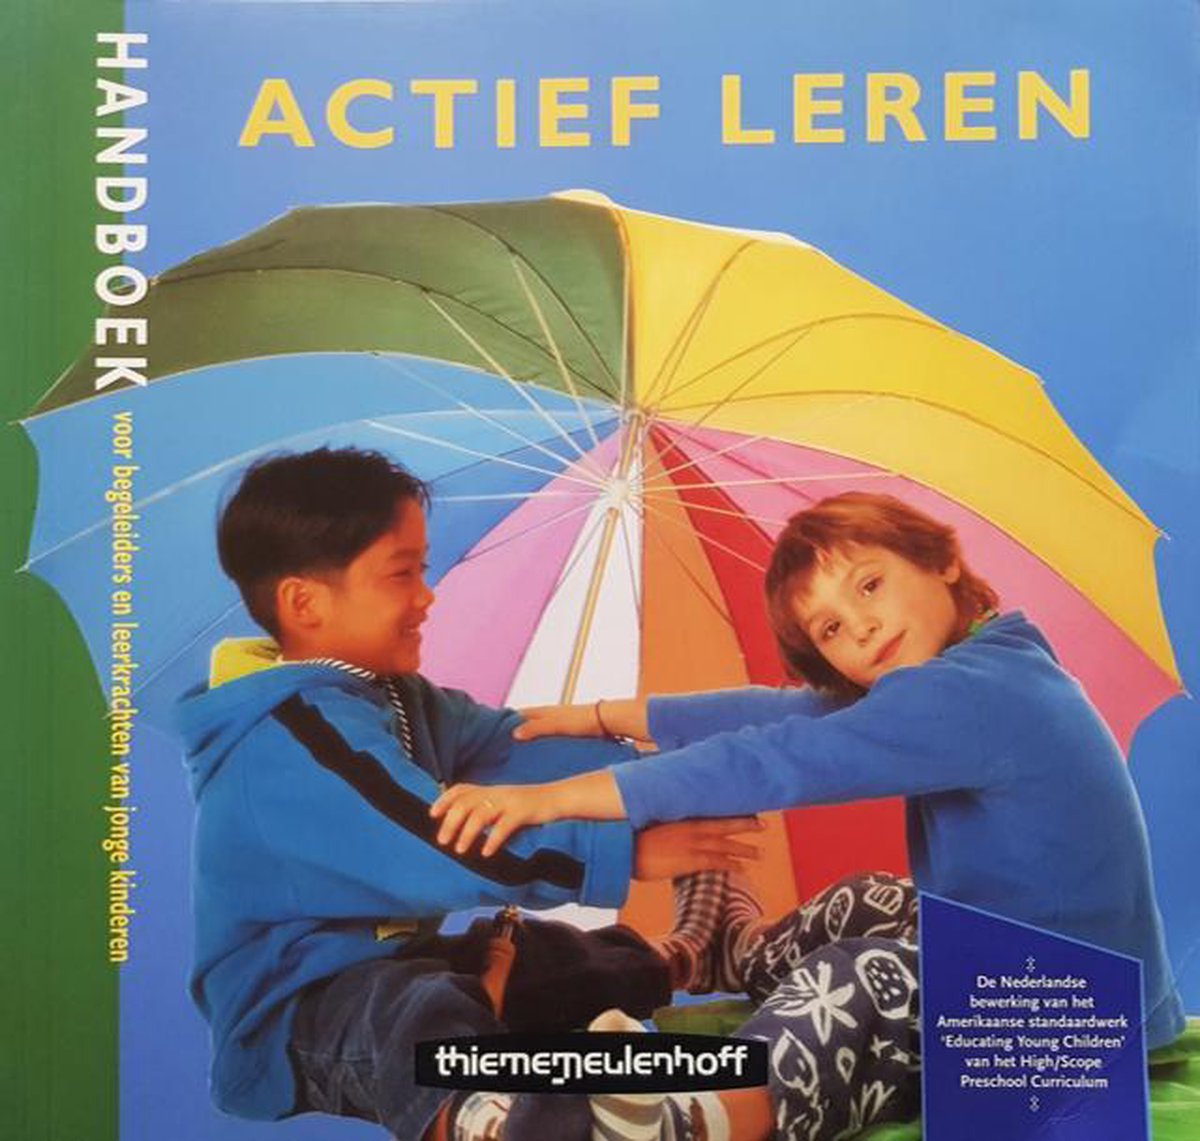 Actief Leren (Educating Young Children